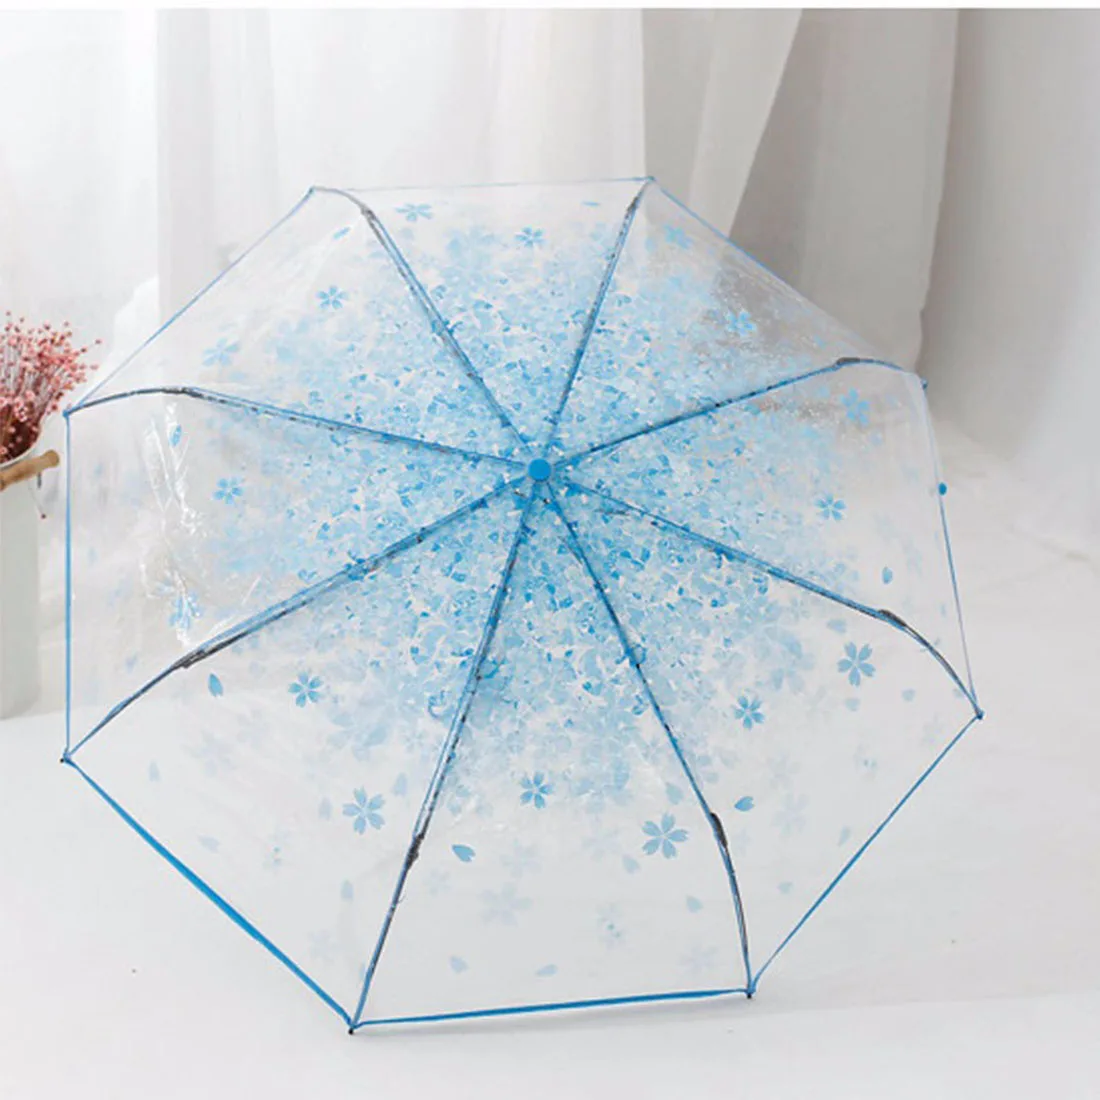 Трехслойный прозрачный зонт с вишенками, дождевик для женщин и детей, зонт от солнца и дождя, компактный складной зонт с защитой от ветра